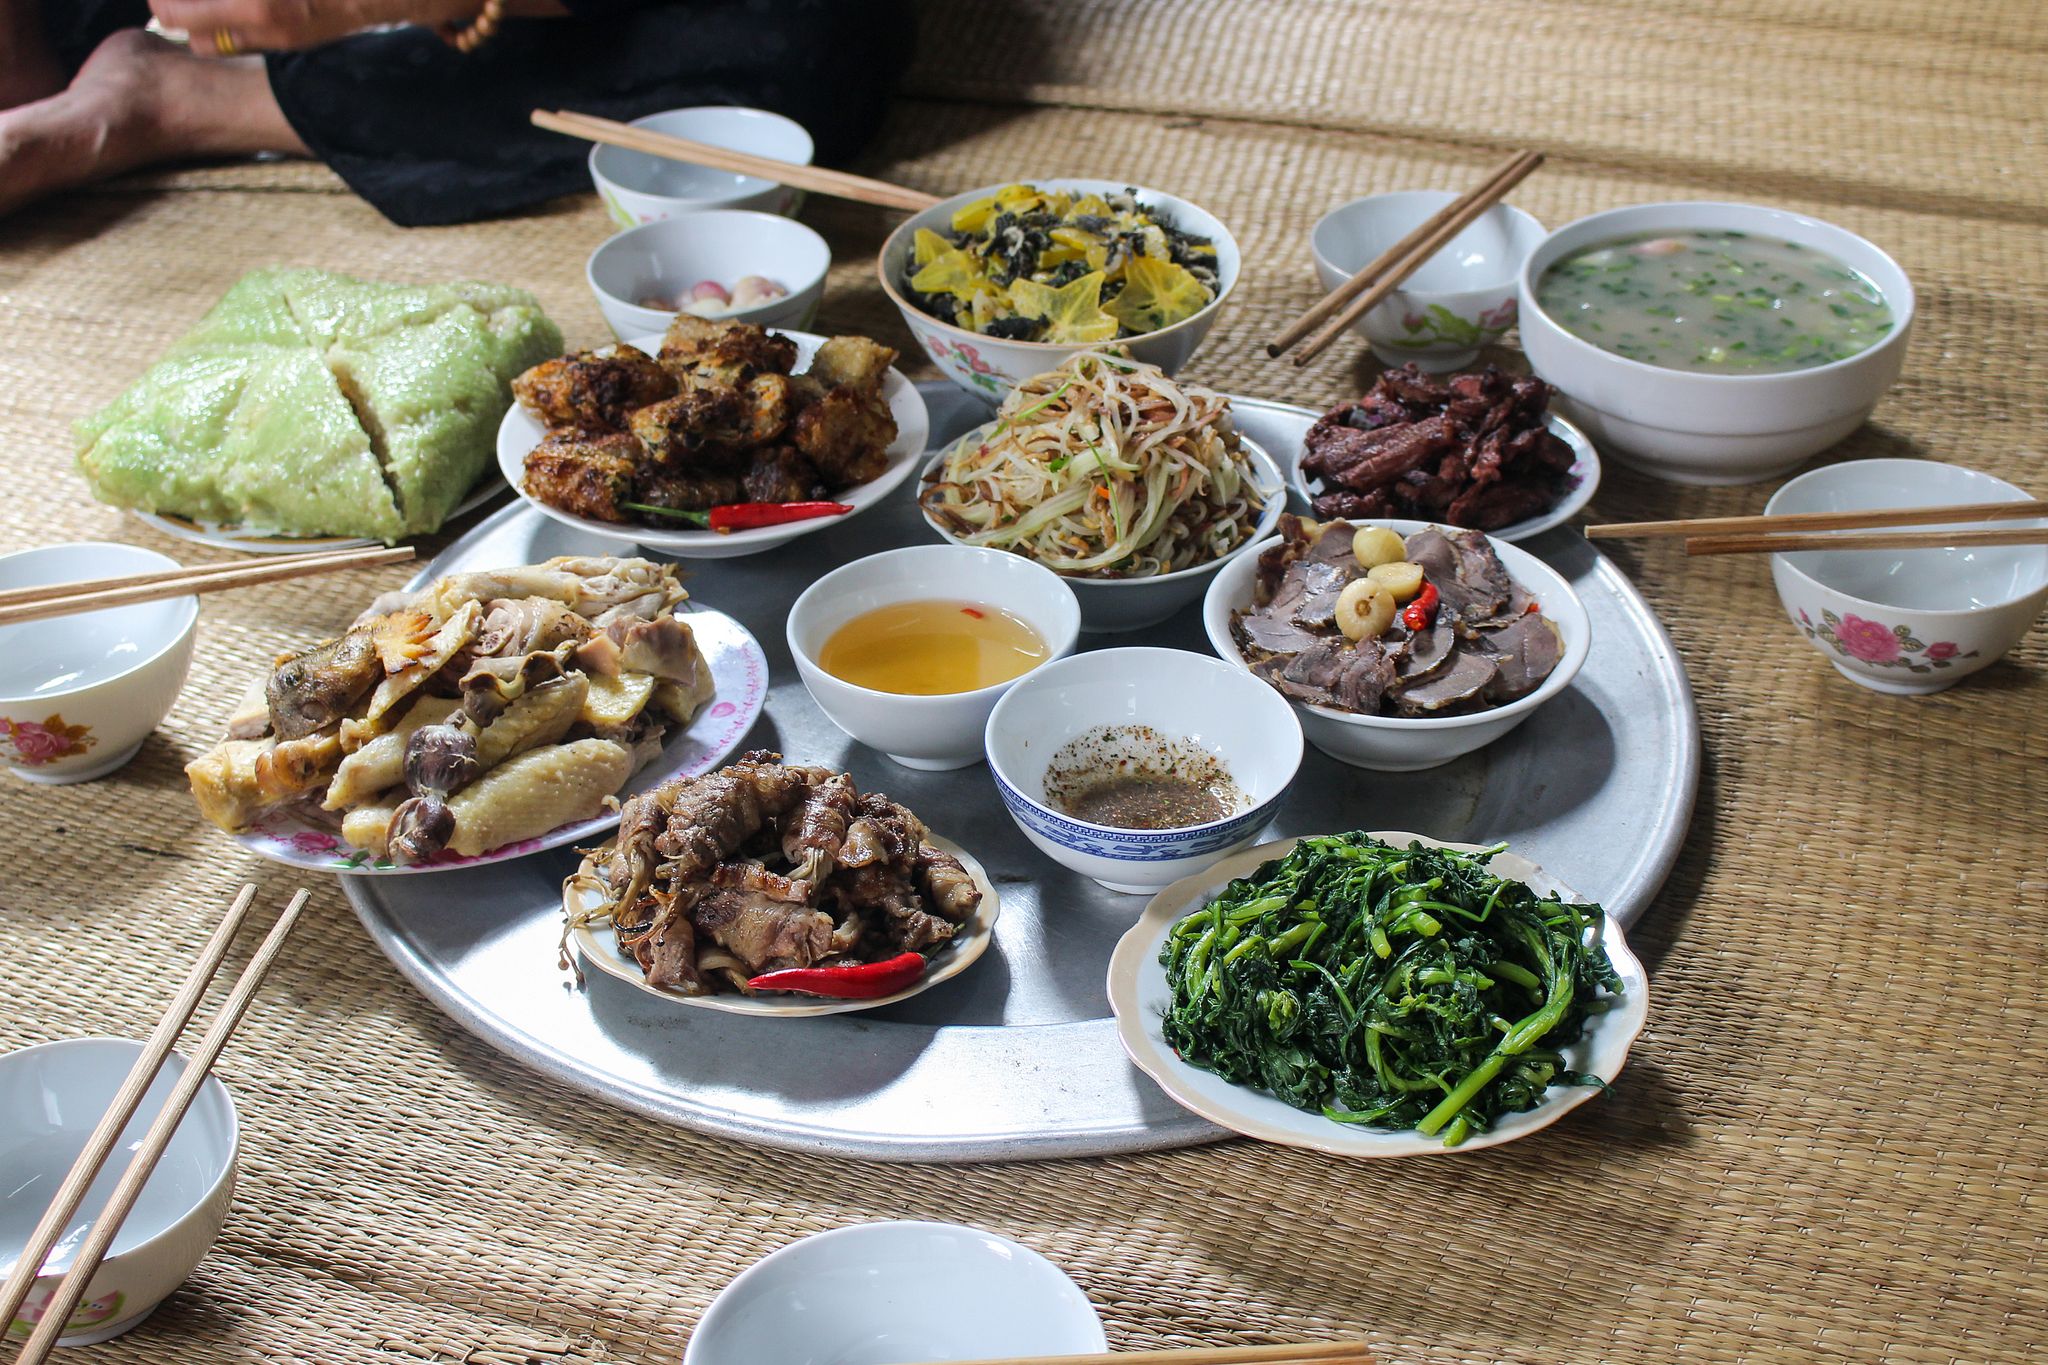 Mâm cơm Việt là sự kết nối giữa các thế hệ, mang đến cái nhìn sâu sắc về nền văn hóa ẩm thực đặc trưng của Việt Nam. Hãy cùng khám phá những tinh hoa ẩm thực Việt trên mâm cơm của chúng tôi.